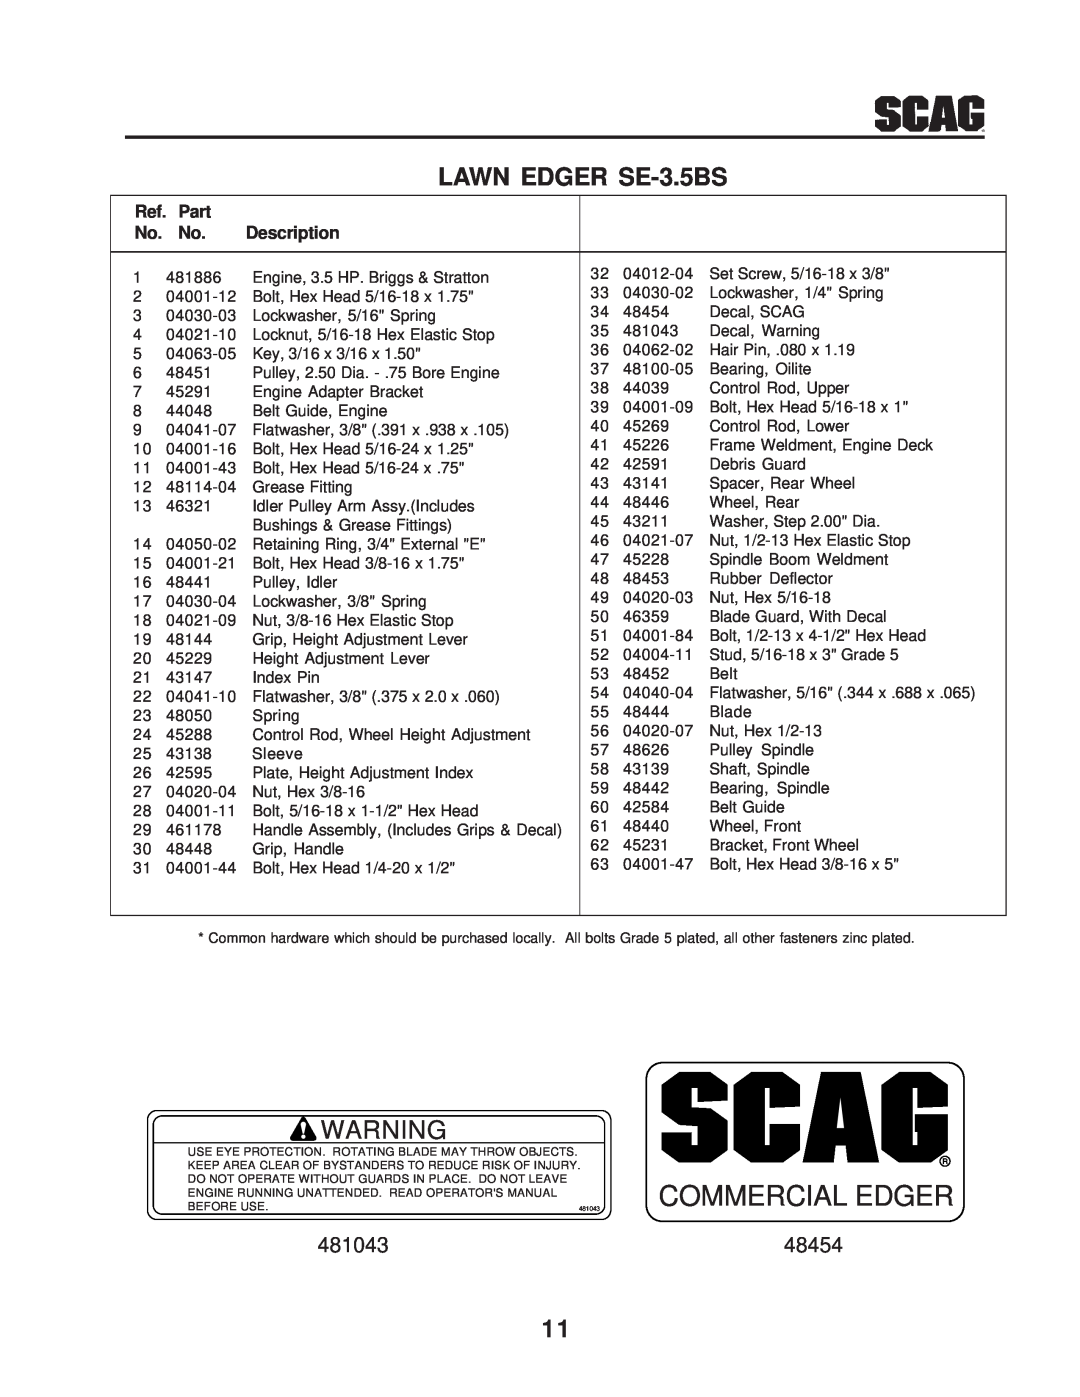 Scag Power Equipment manual LAWN EDGER SE-3.5BS, Commercial Edger, Ref. Part, Description 